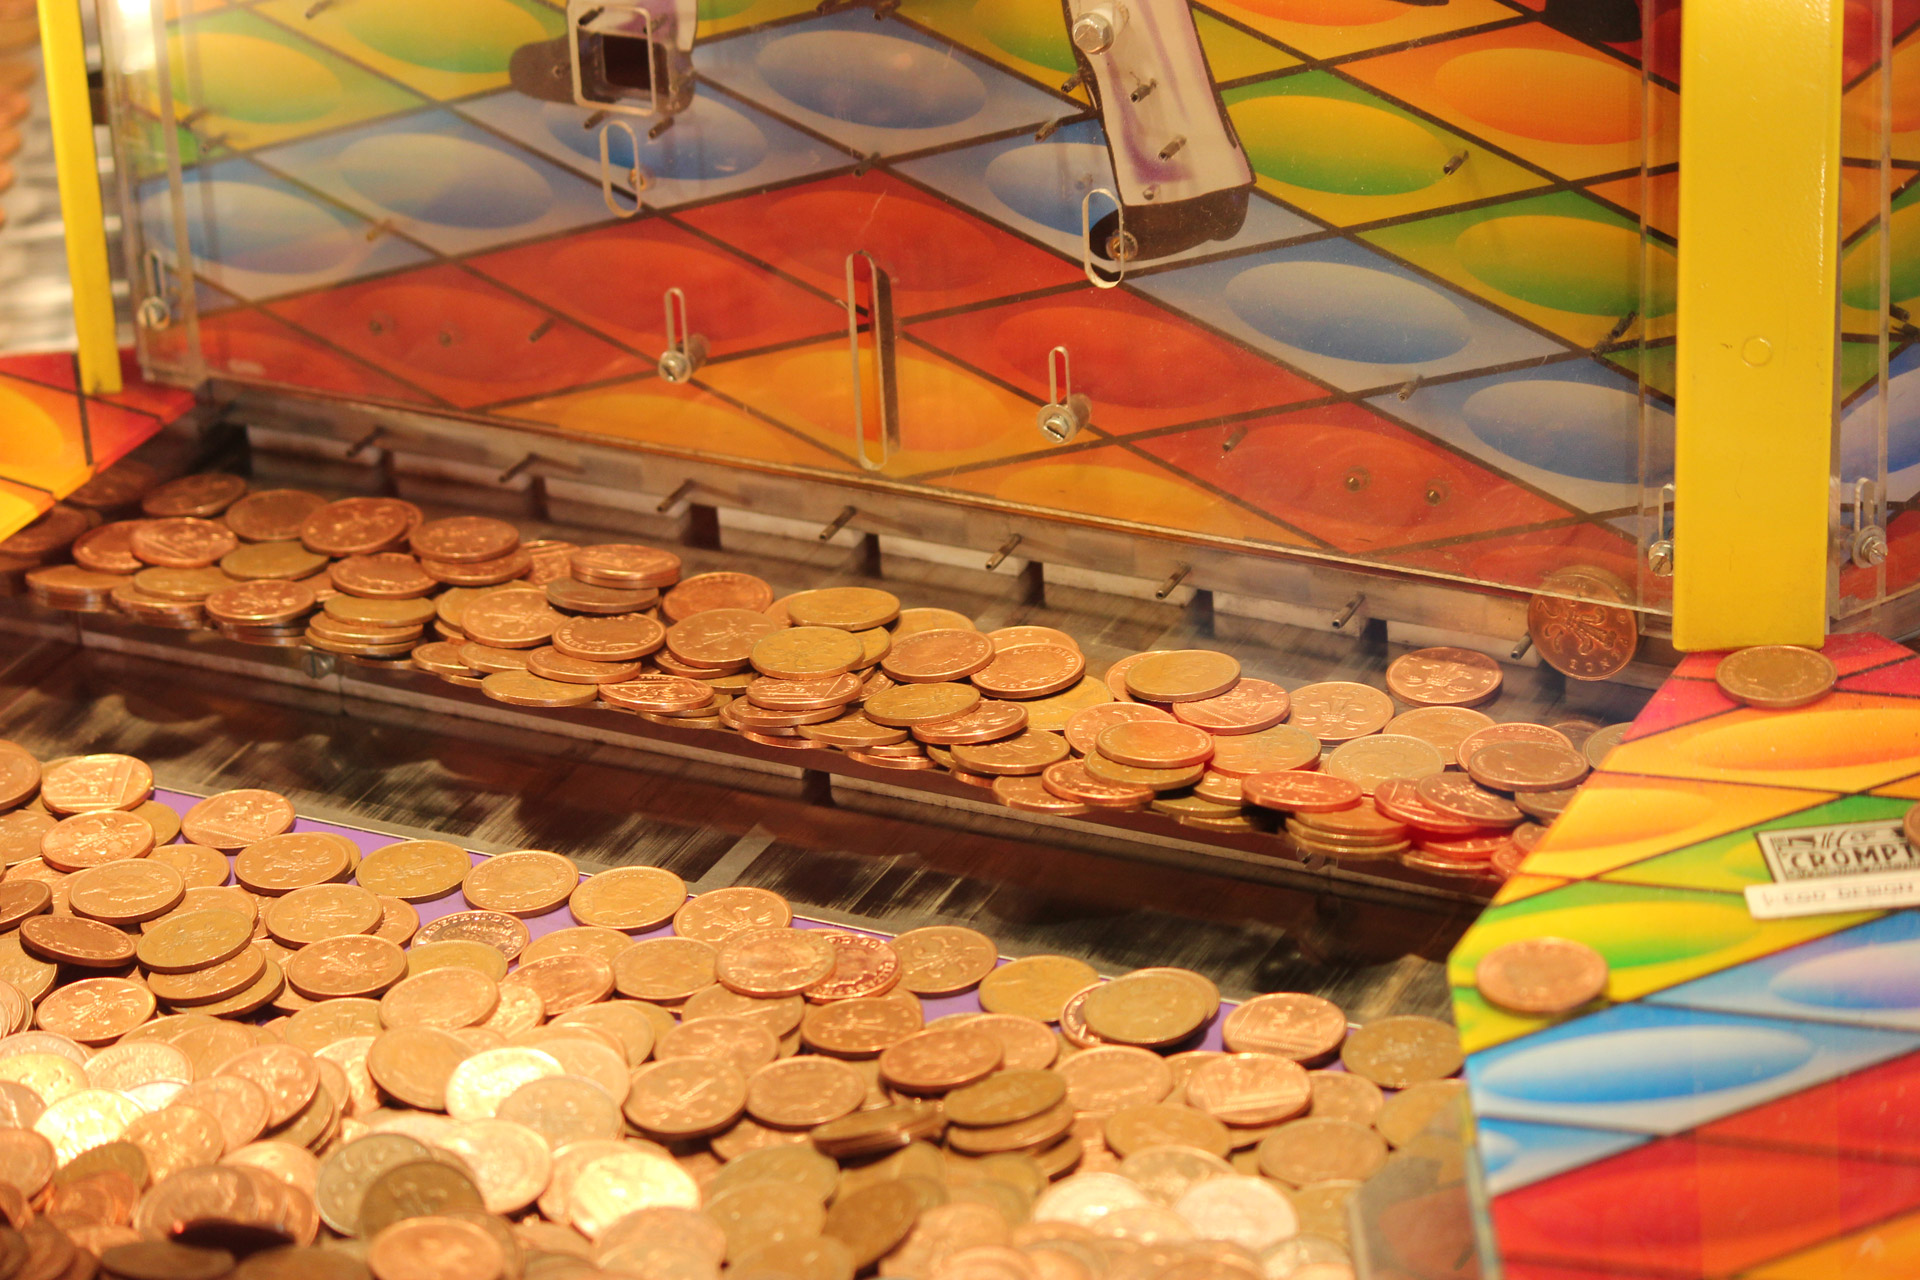 Coin Drop Machine at the arcade